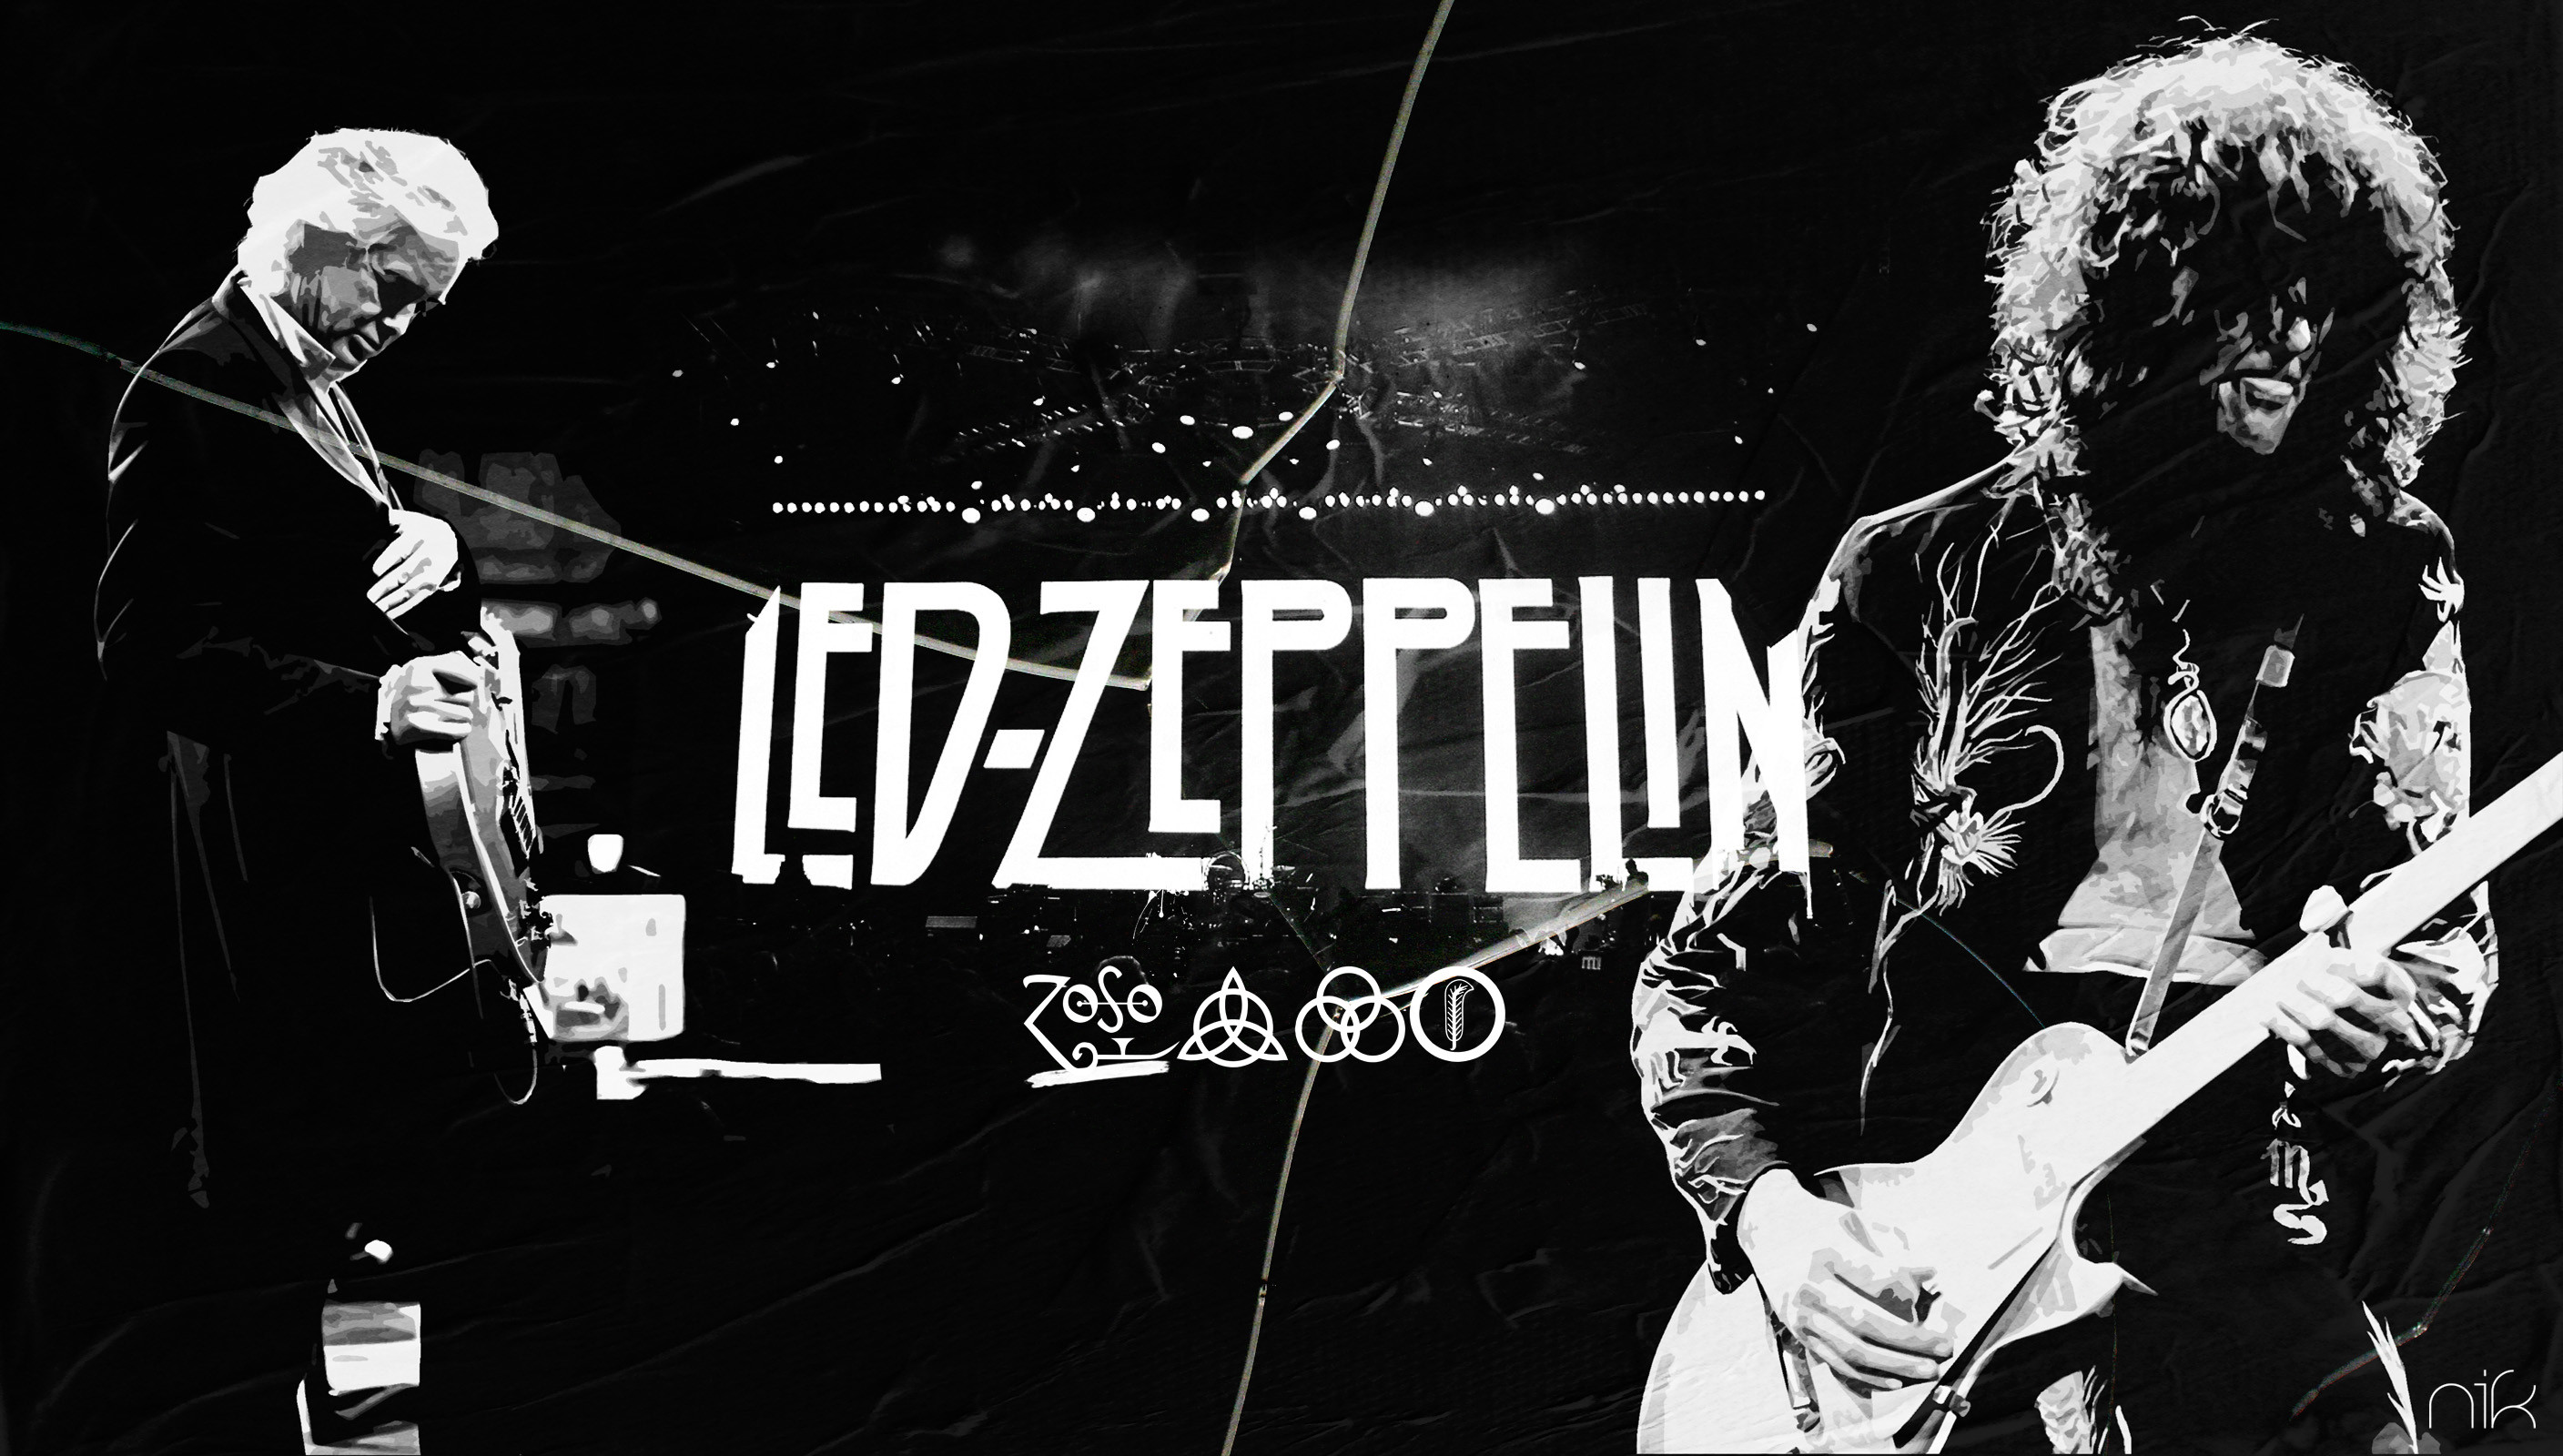 2816x1600 Led Zeppelin Wallpaper 4 by nicollearl